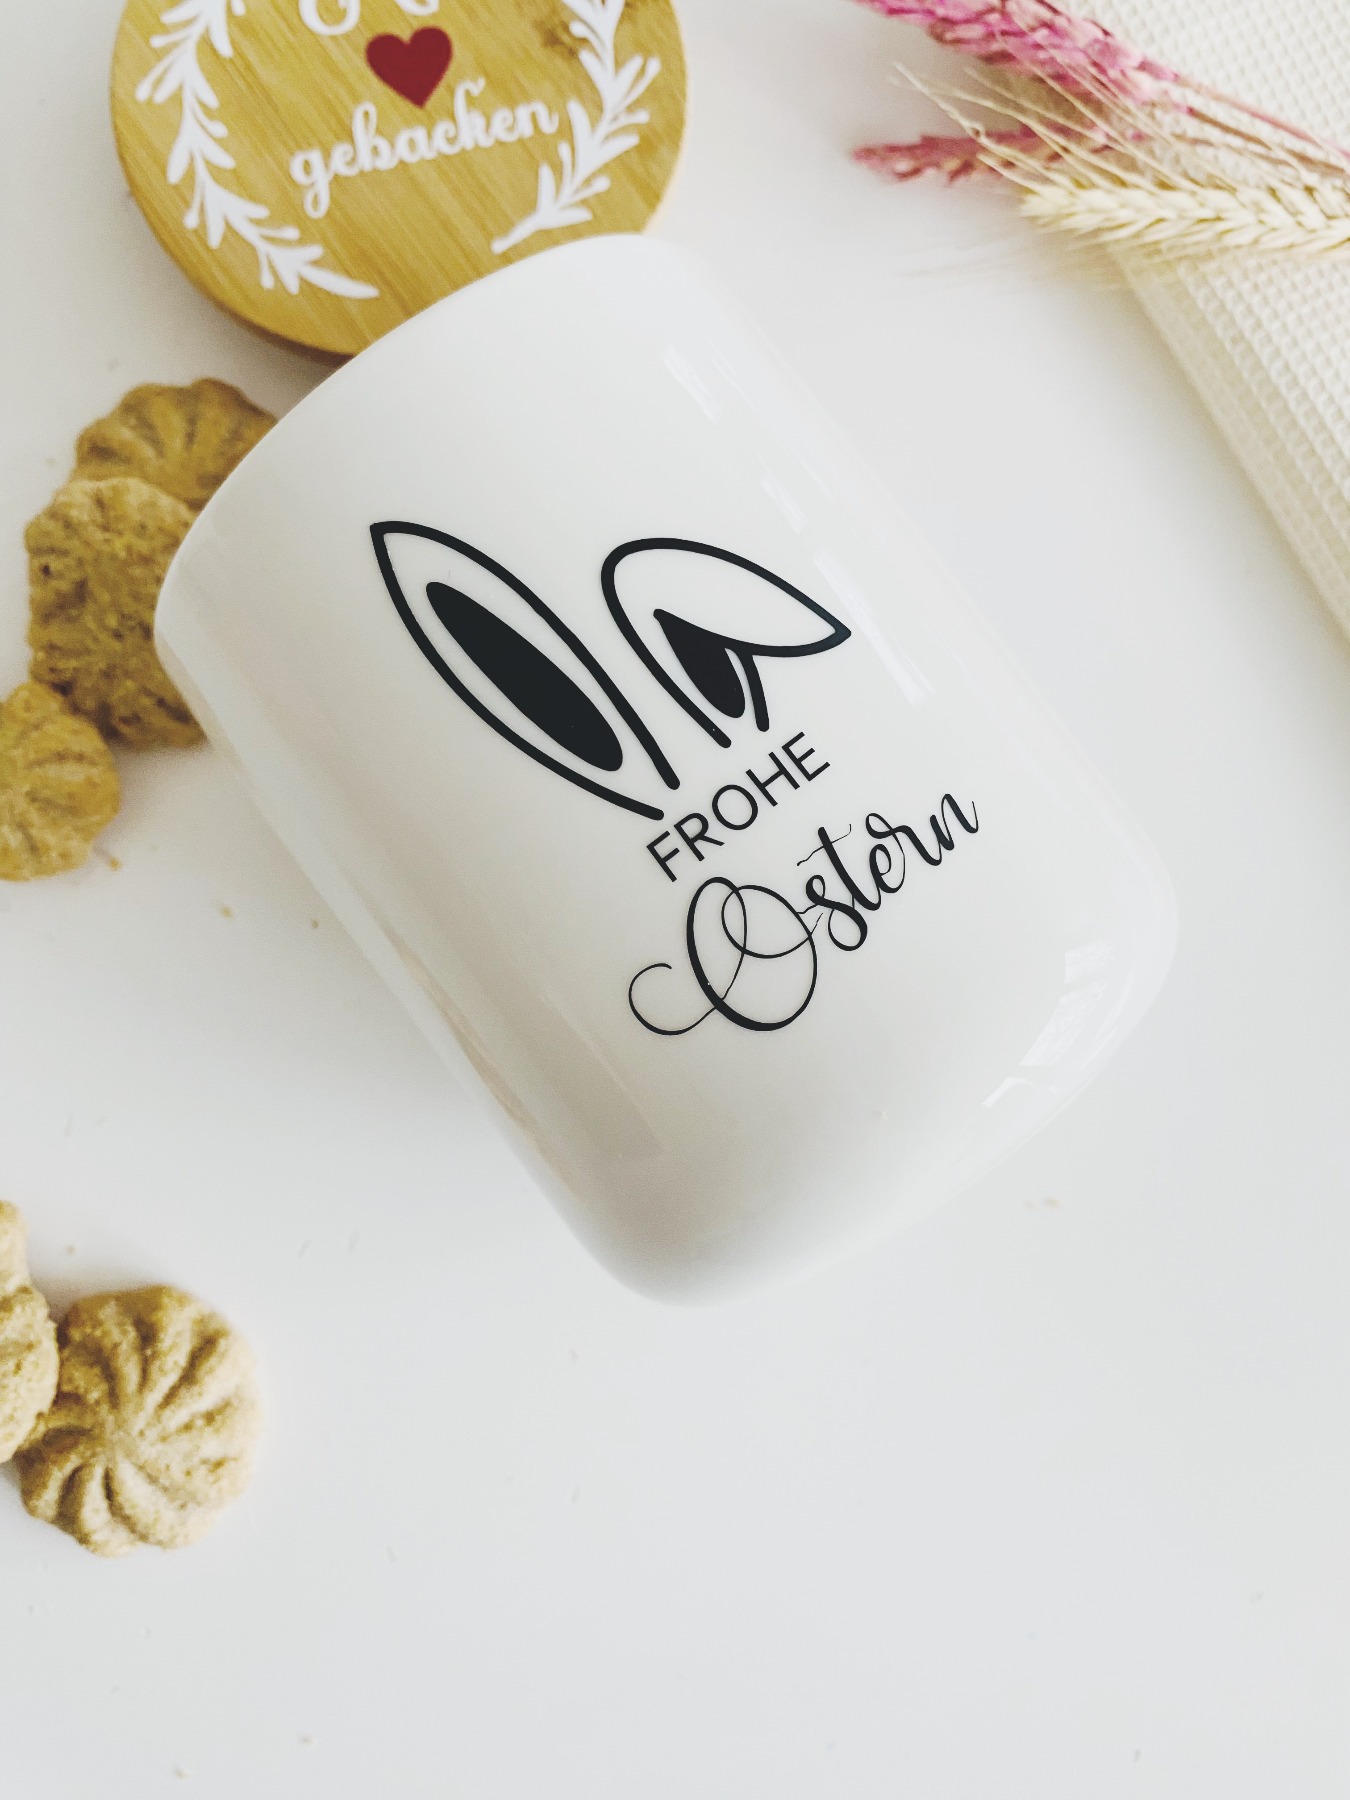 Keksdose Ostern - Keramikdose vom Osterhasen, Geschenkidee zu Ostern oder Deko für die Küche 2